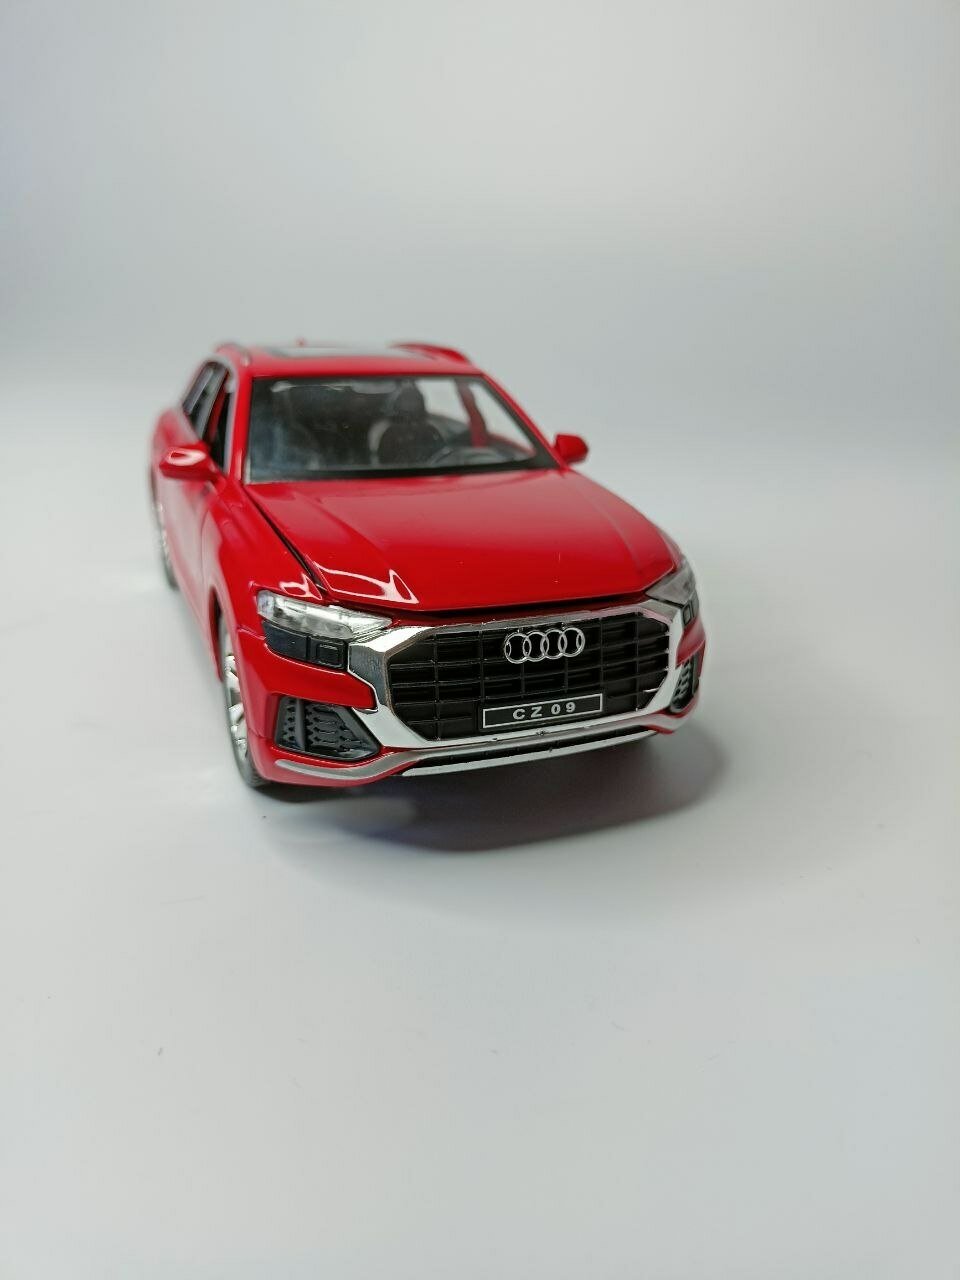 Модель автомобиля Audi Q8 коллекционная металлическая игрушка масштаб 1:24 красный